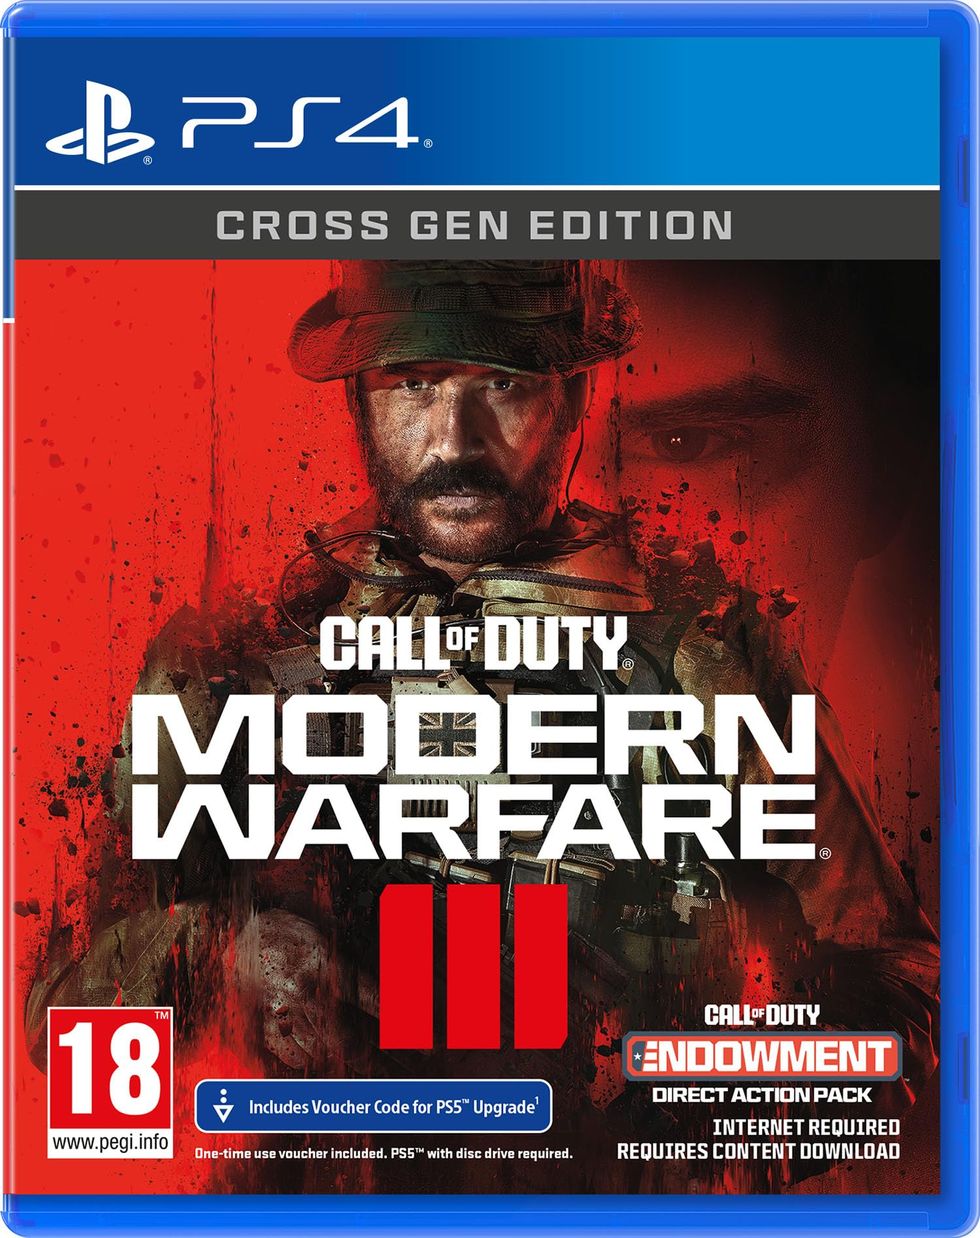 Call of Duty®: Modern Warfare III